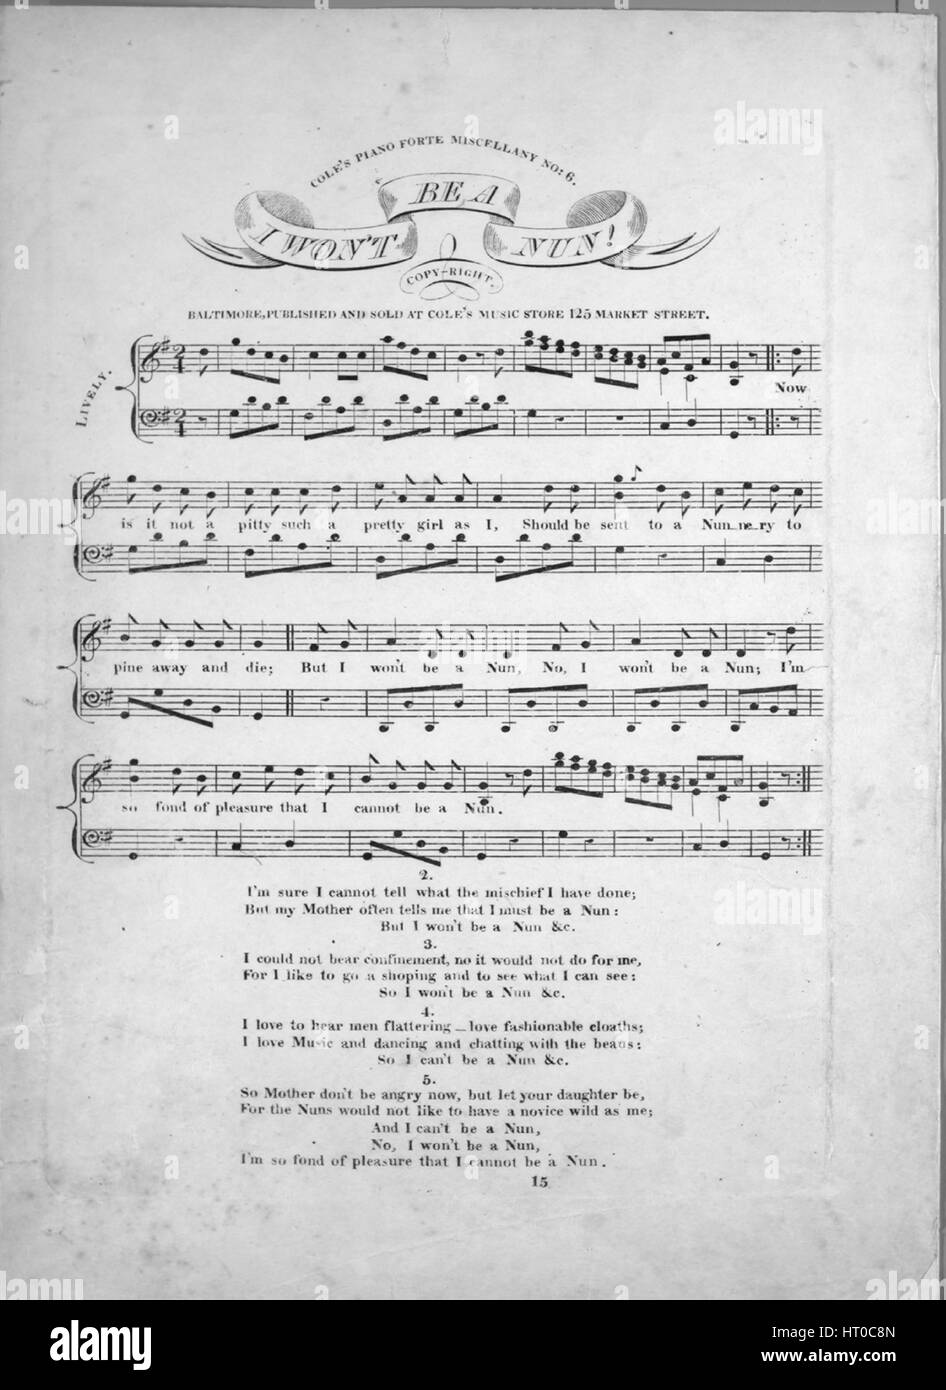 Imagen de cubierta de partituras de la canción "No quiero ser una monja!  Cole Forte Piano Miscelánea nº6", con notas de autoría original leyendo  'na', Estados Unidos, 1900. El editor está clasificada